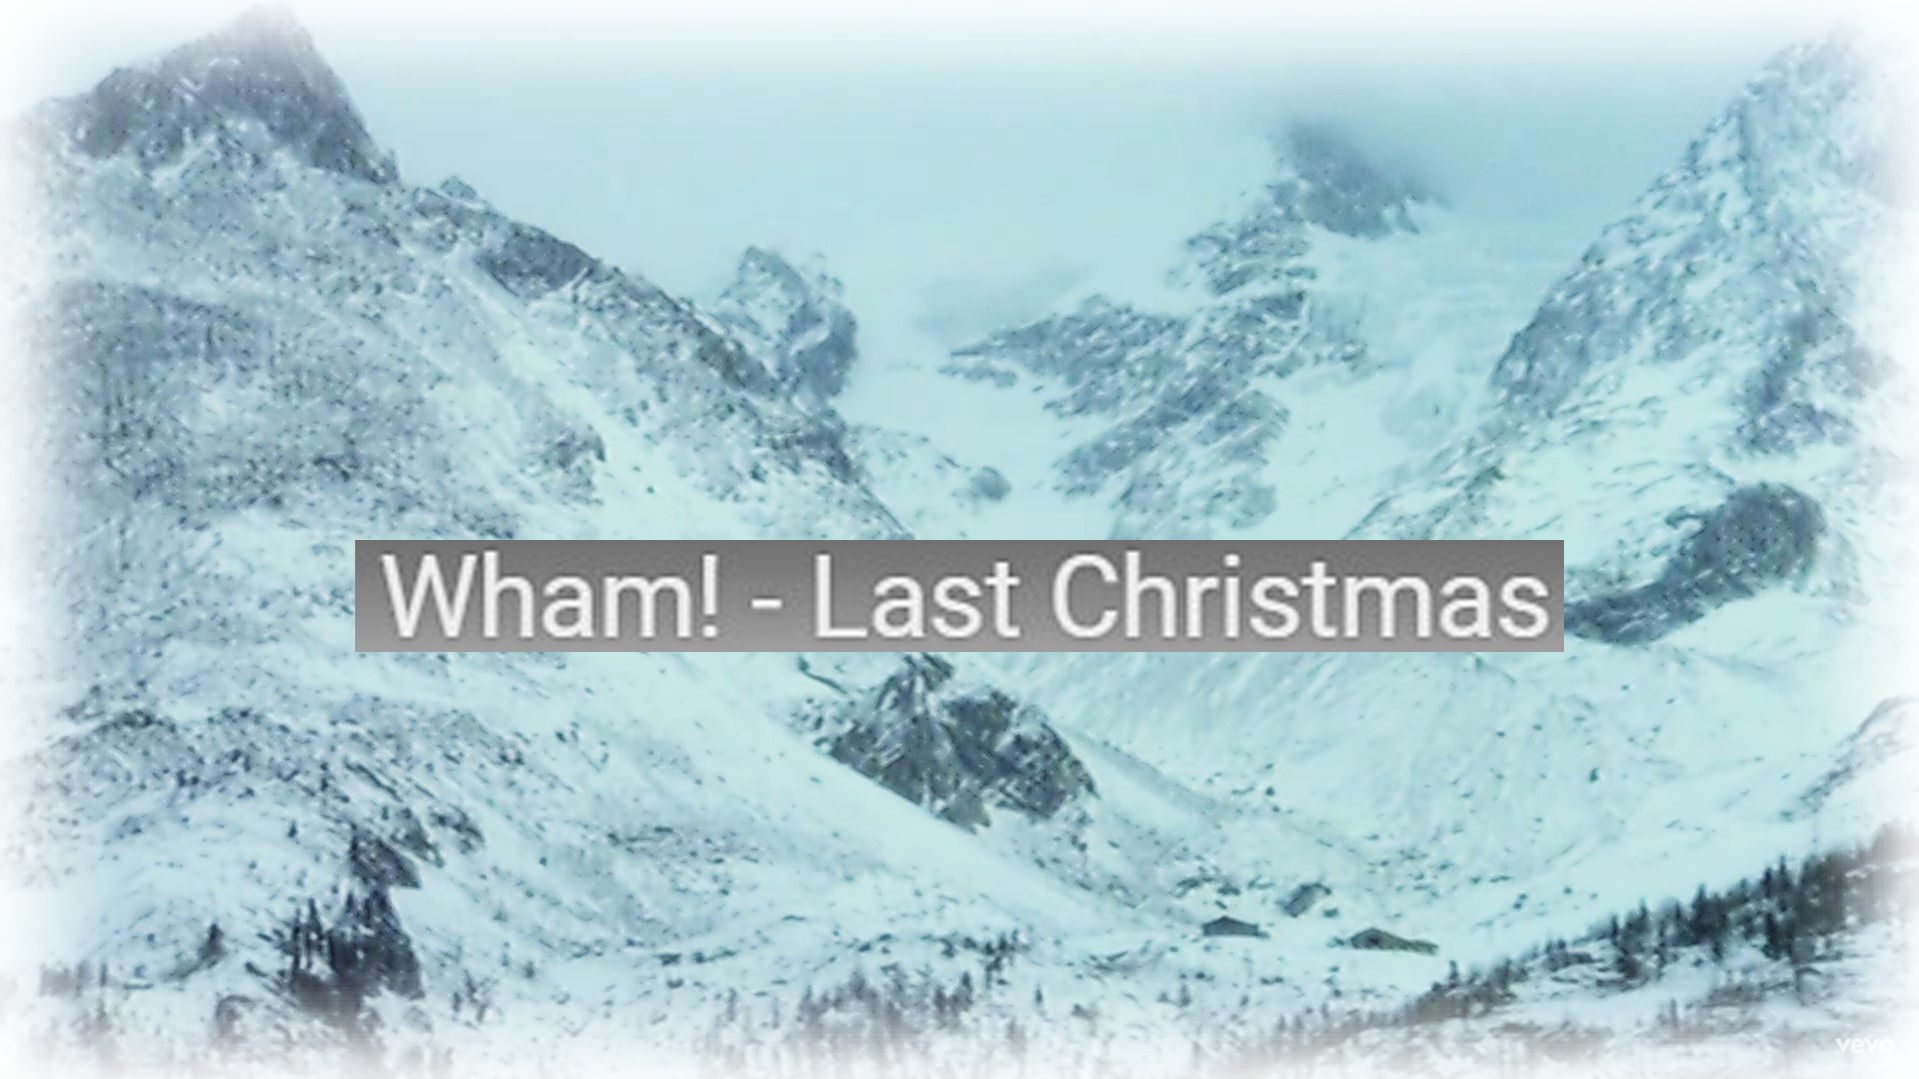 wham-last-christmas-perevod-teksta-na-russkij-yazyk